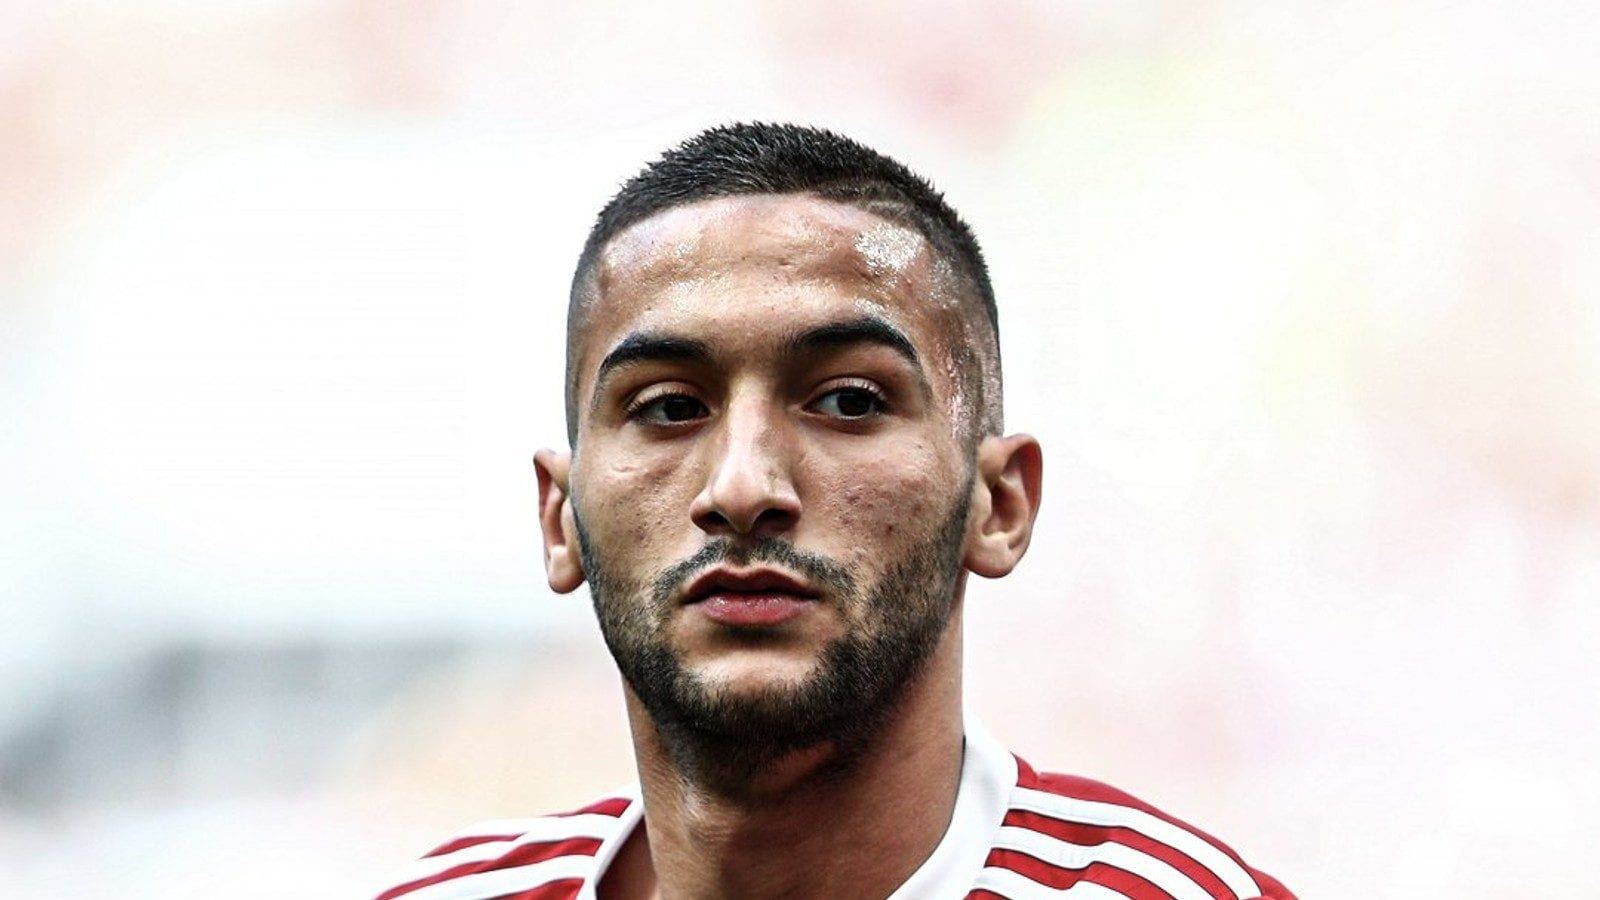 Marruecos convocó a Hakim Ziyech para los partidos de preparación contra Chile y Paraguay antes de la Copa Mundial de la FIFA